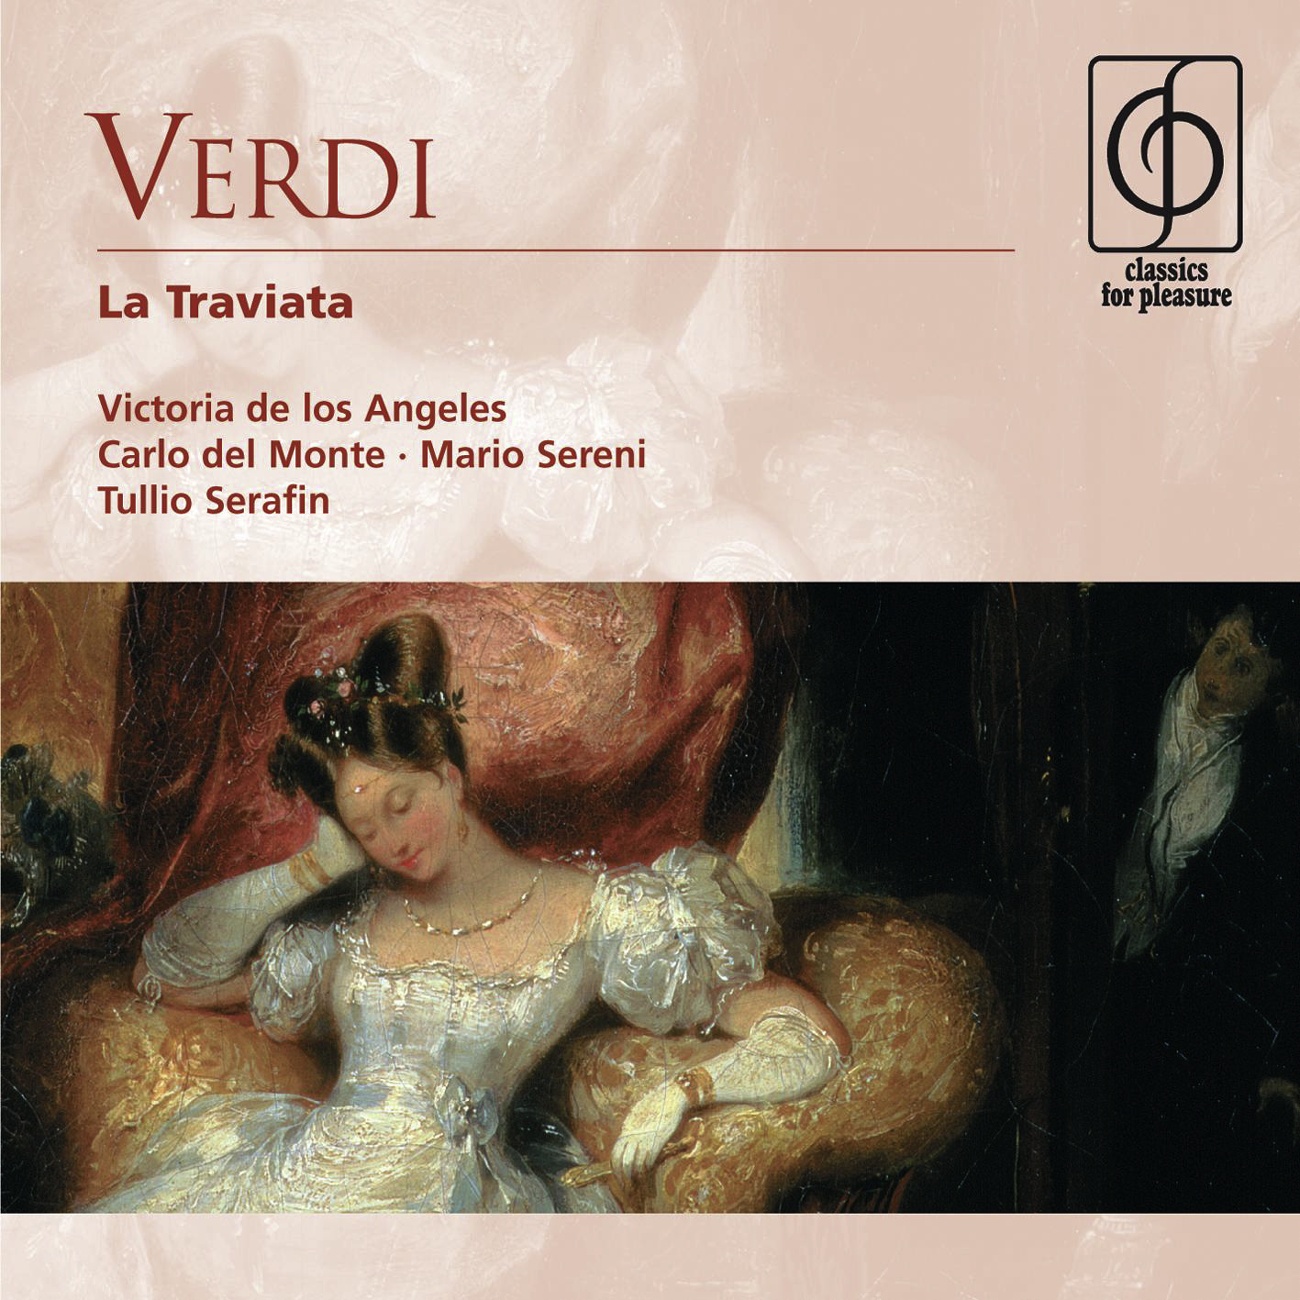 La Traviata - Opera in three acts (1992 Digital Remaster), Act I: Dell'invito trascorsa è già l'ora